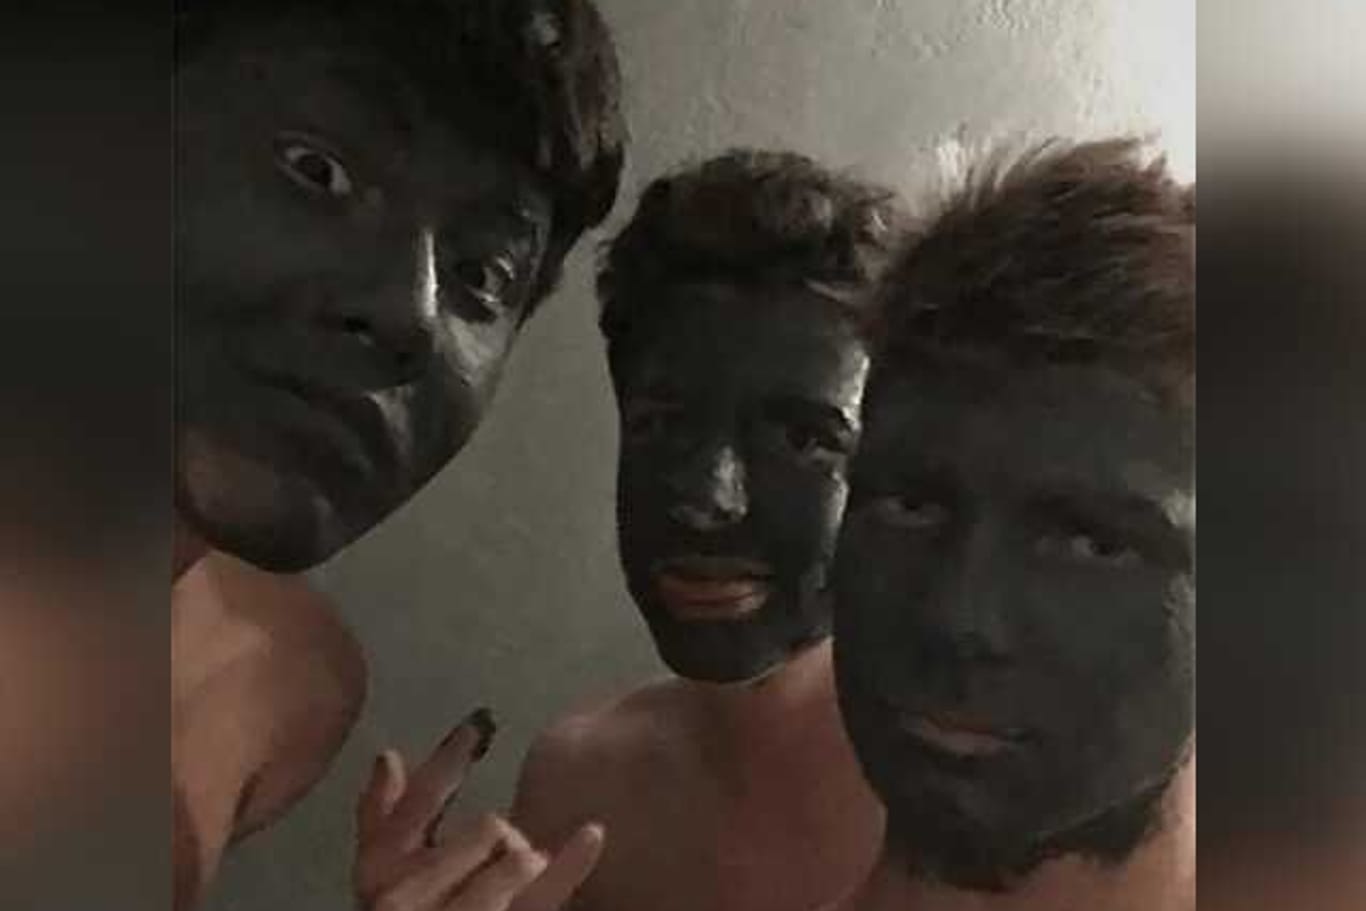 Drei Jugendliche benutzen Gesichtsmaske (Archivbild): Für dieses Bild wurden sie von einer Schule verwiesen, nun bekommen sie eine Entschädigung.